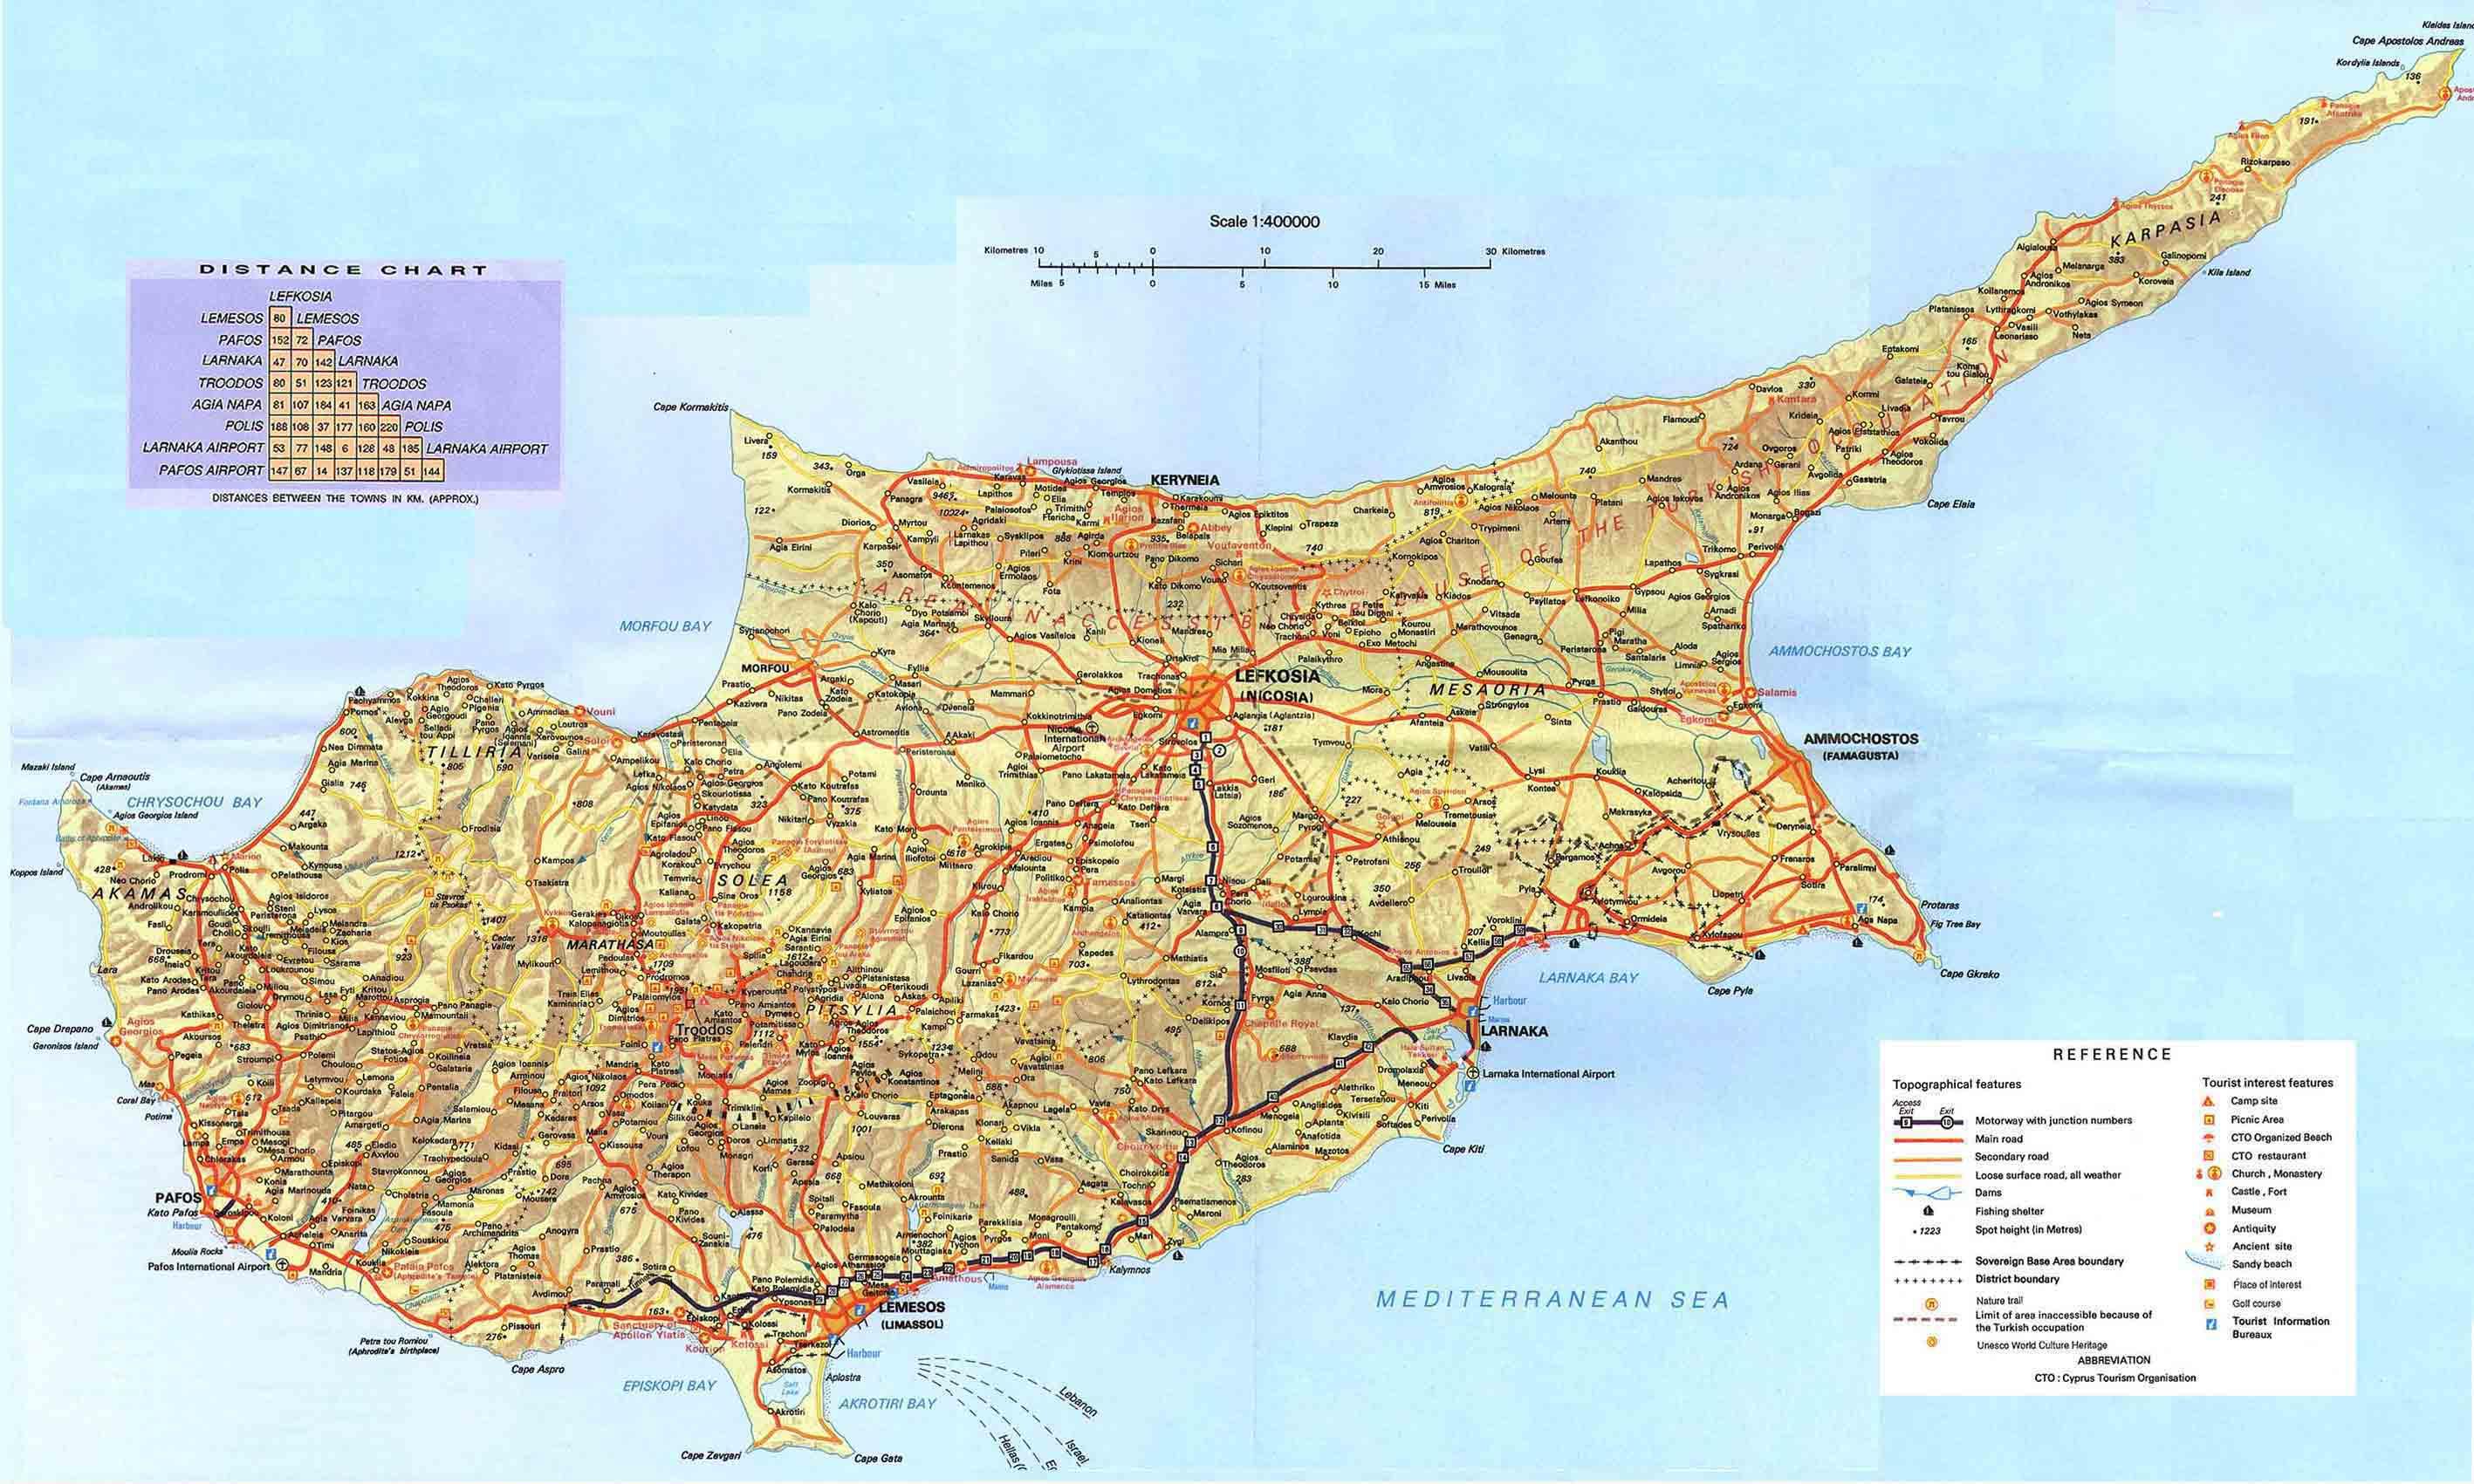 Kort over Cypern - Cypern land i verden kort (det Sydlige Europa - Europa)